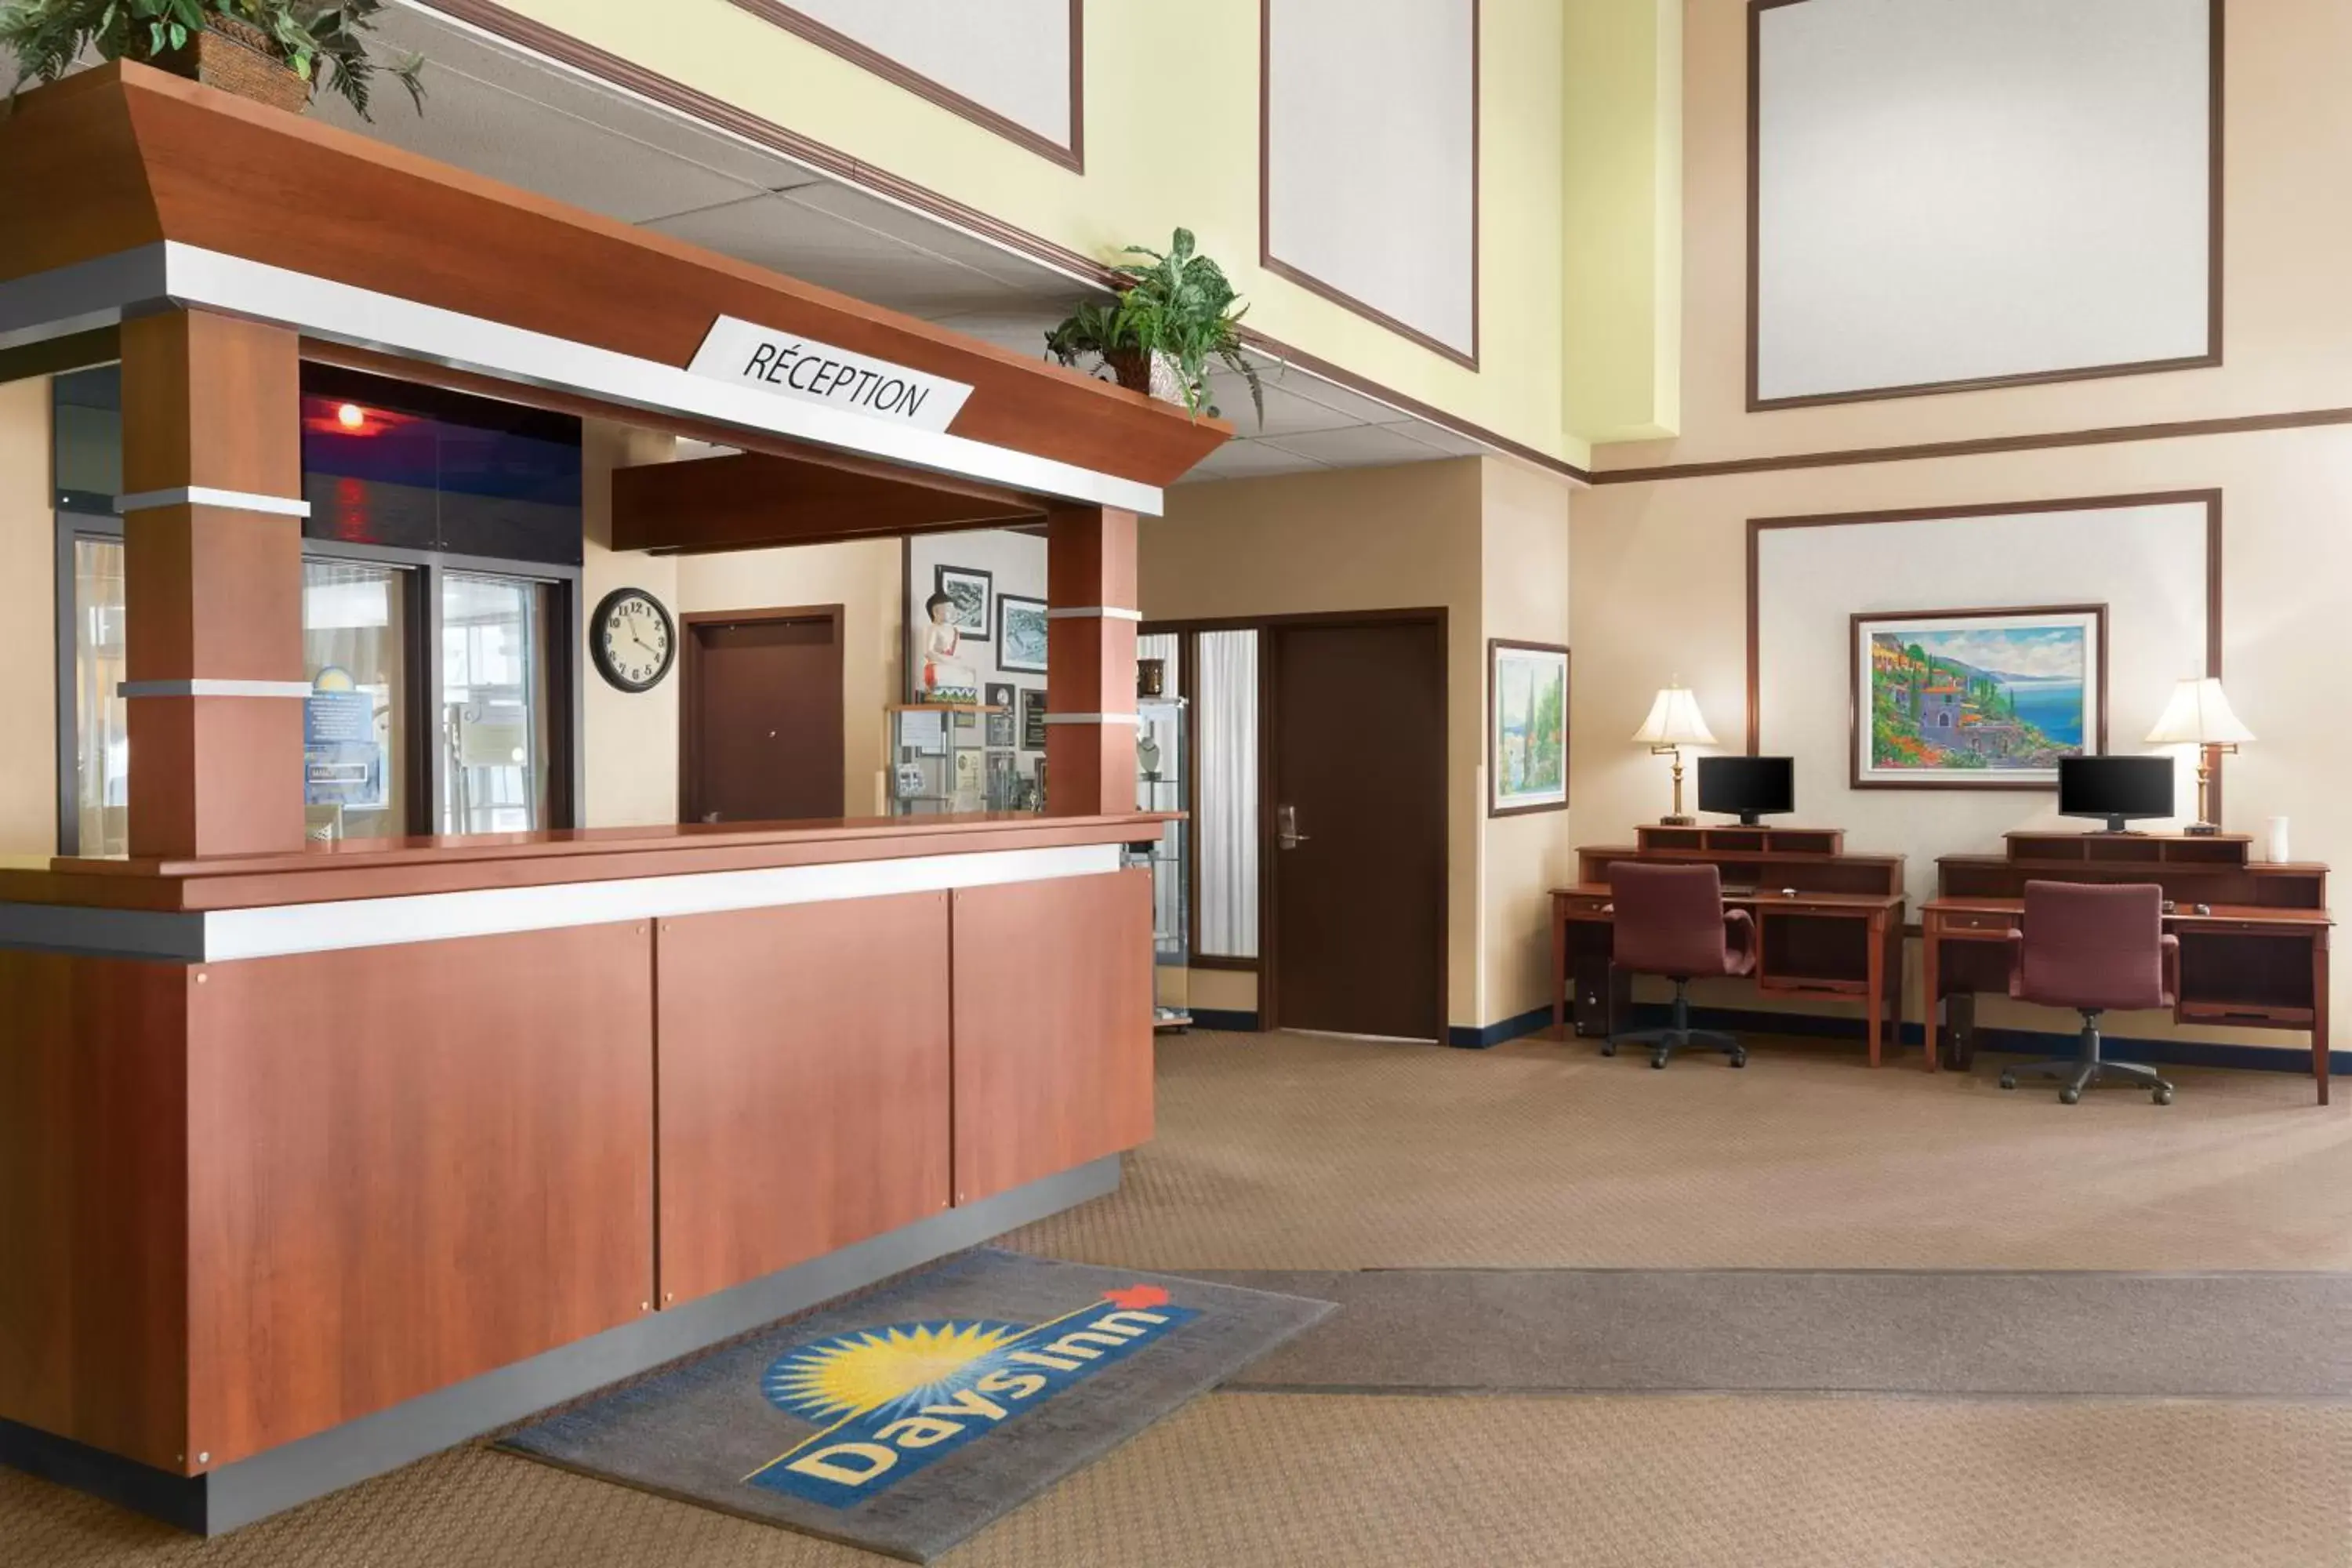 Lobby or reception, Lobby/Reception in Hotel Days Inn Blainville & Centre de Conférence